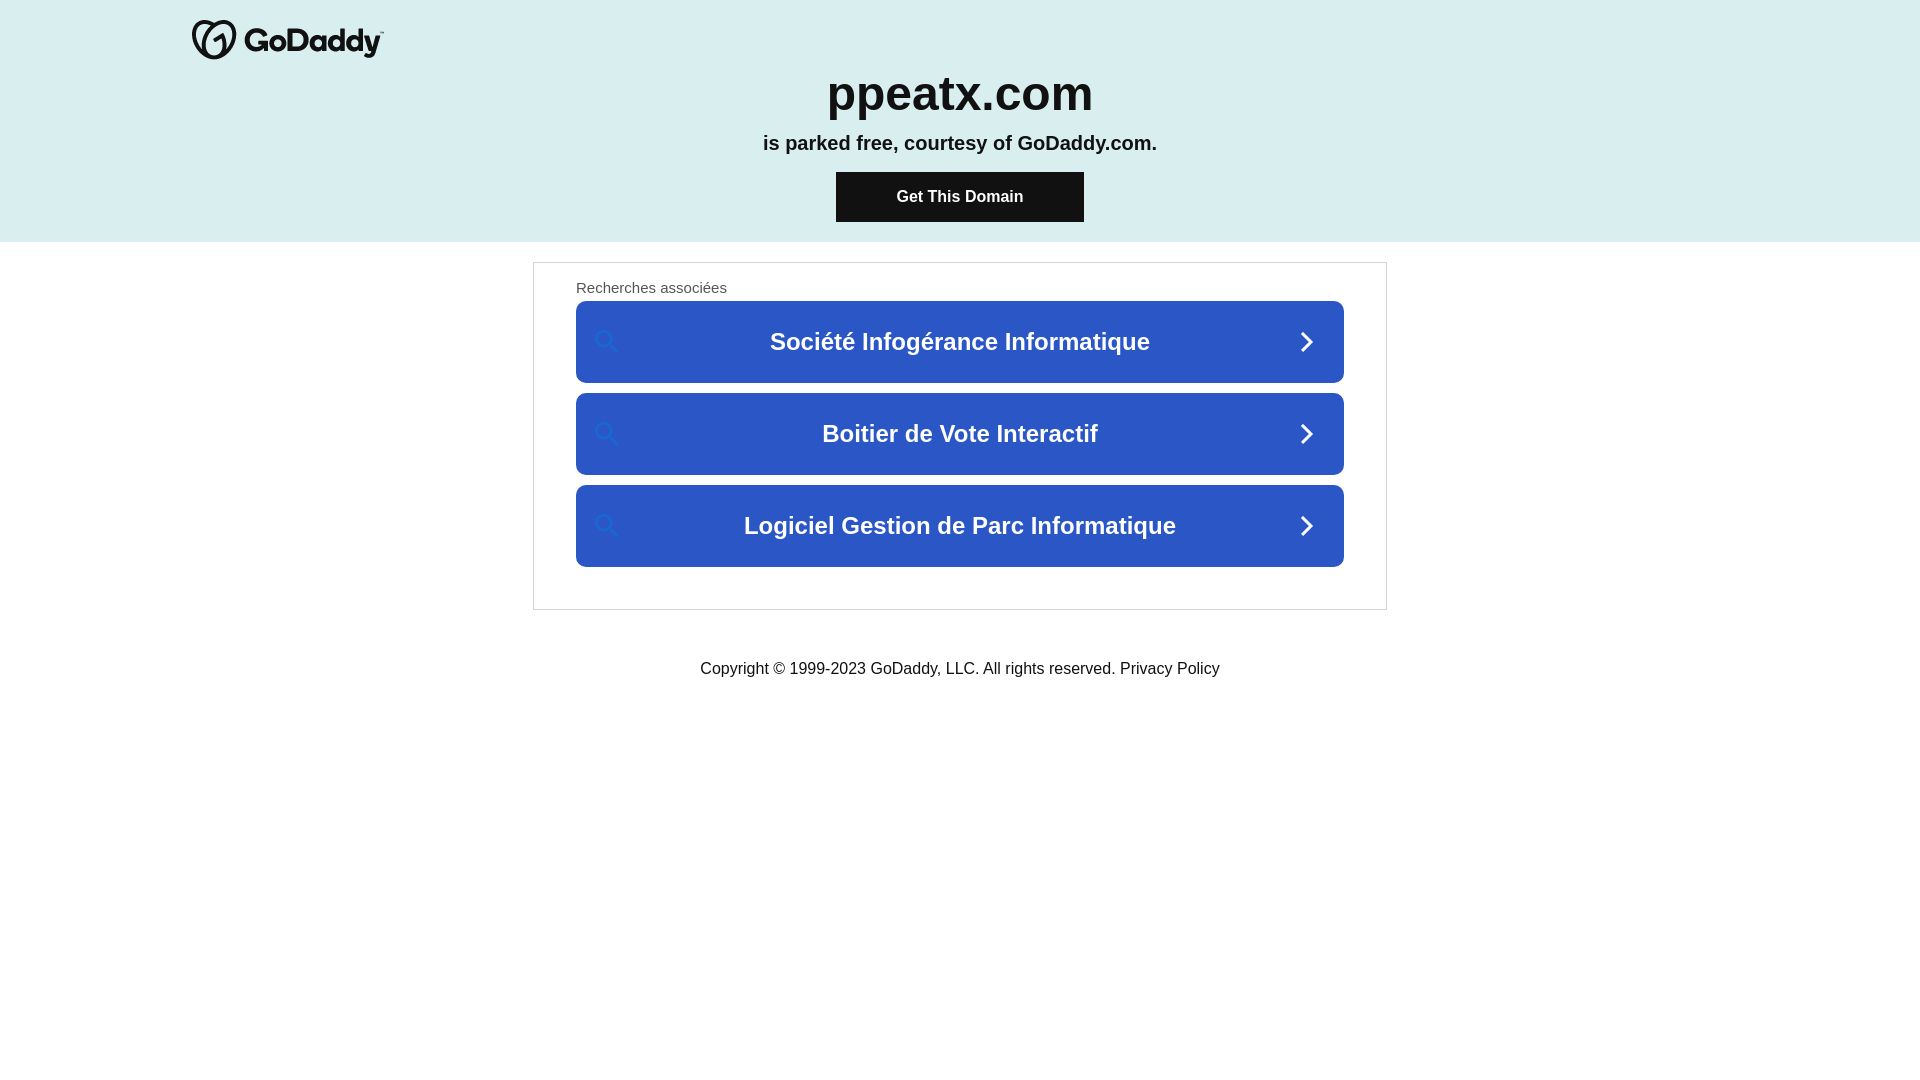 Estado web ppeatx.com está   ONLINE